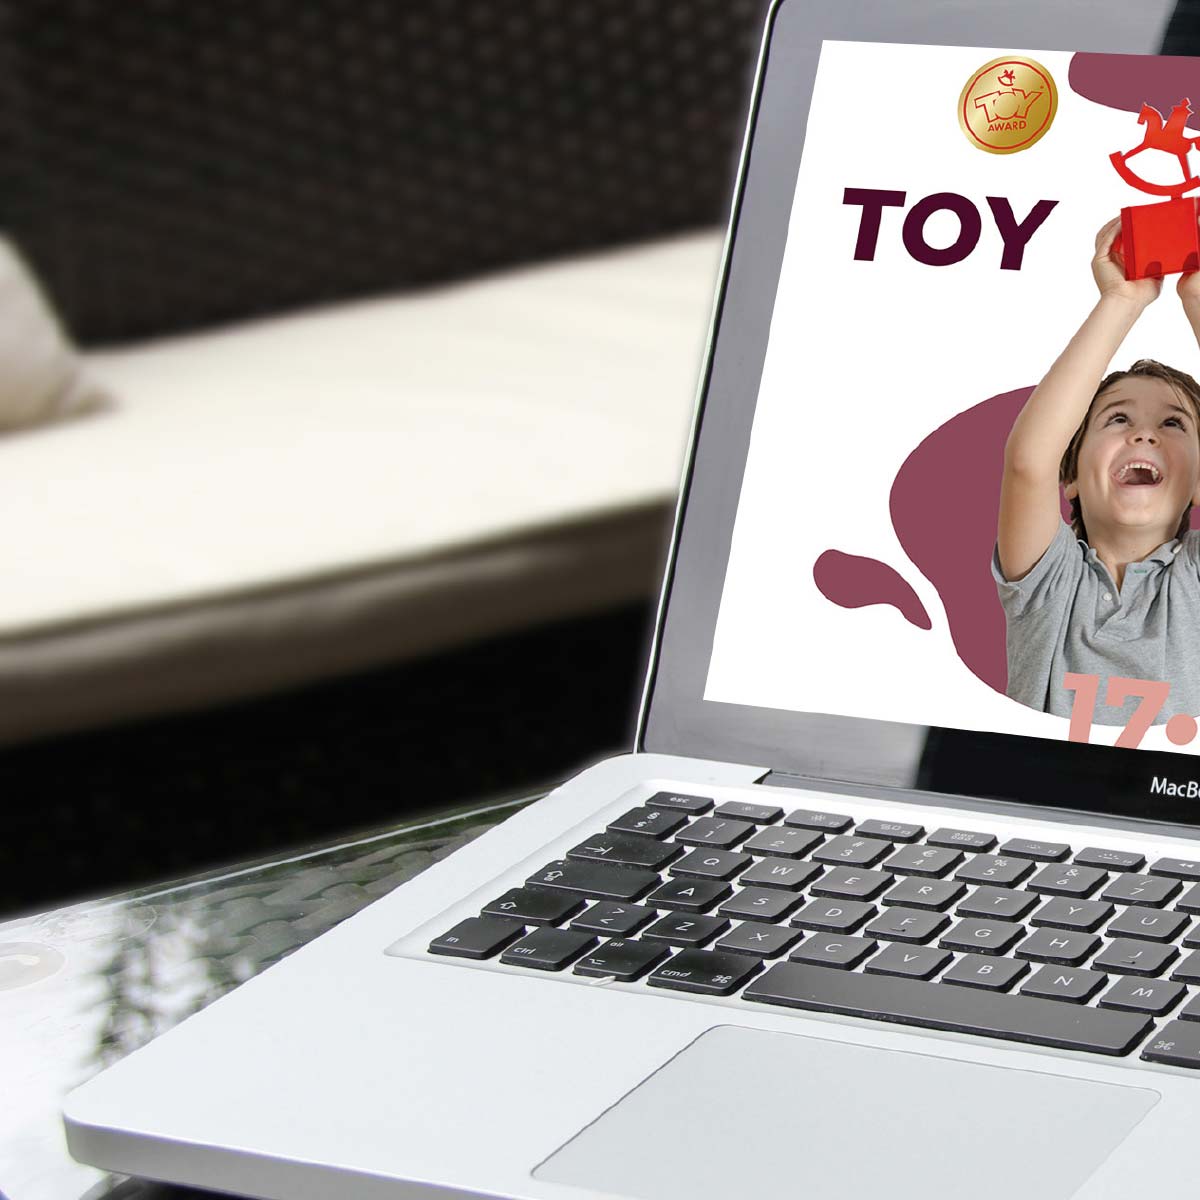 Startseite von ToyAward auf einem MacBook Pro